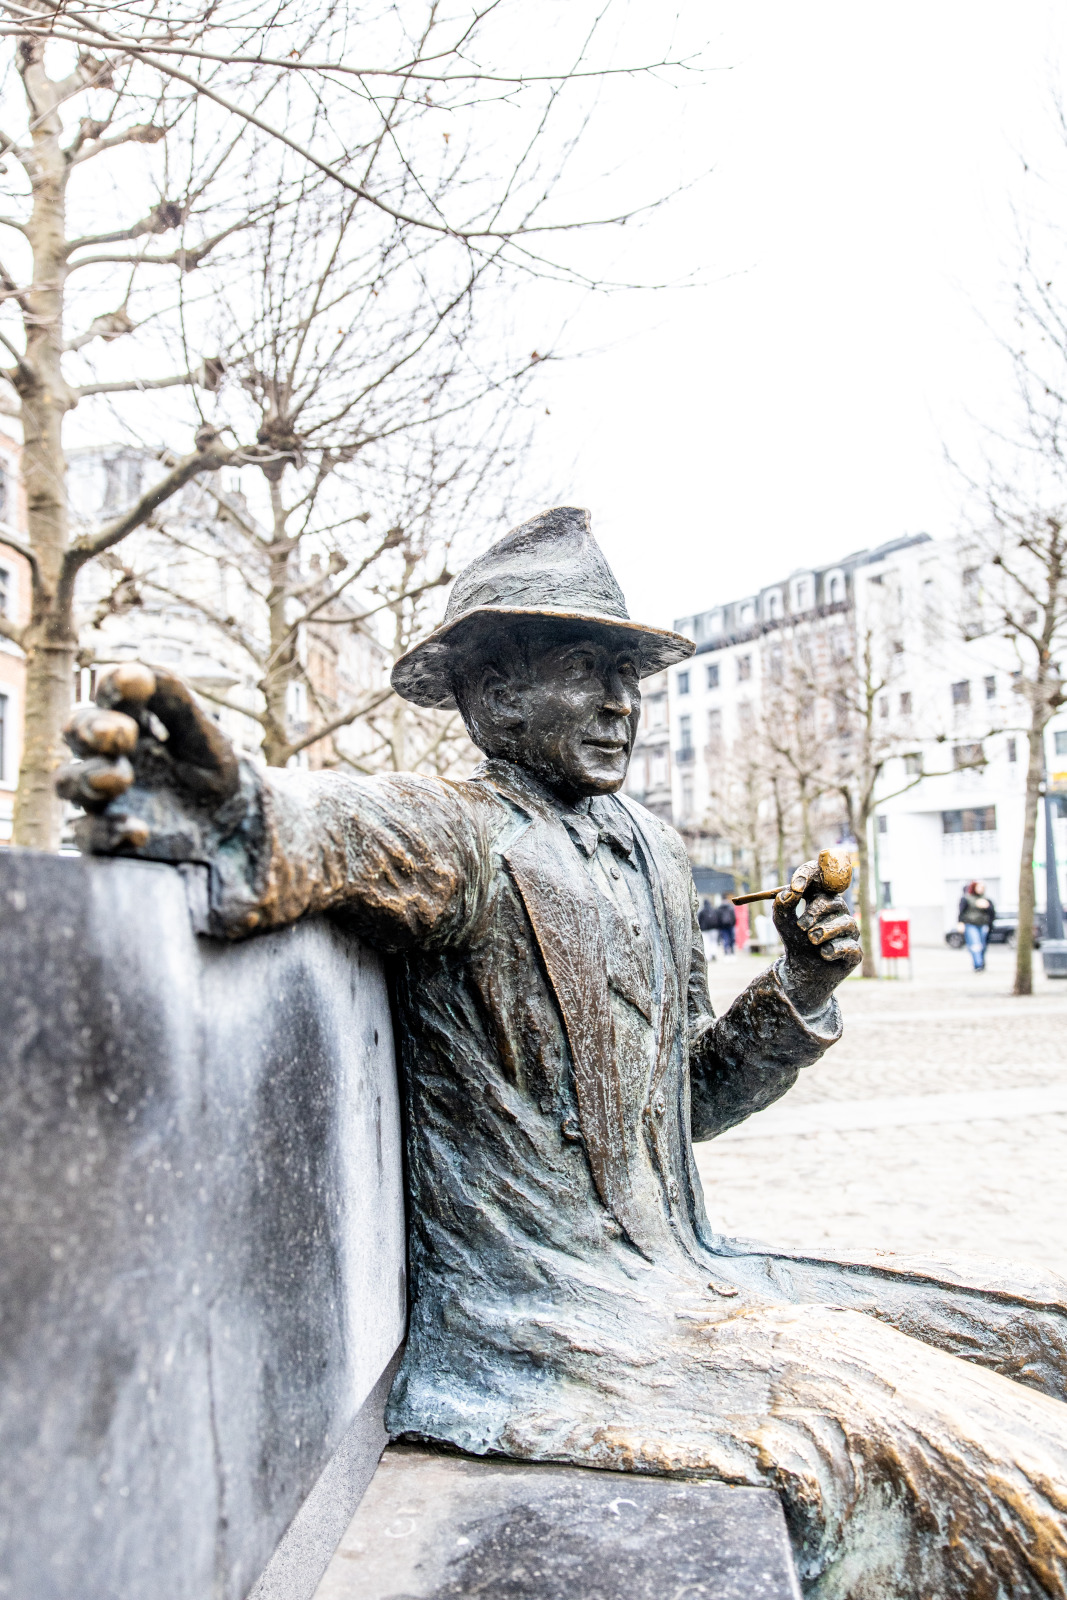 Photographie au format portrait de la statue de Georges Simenon située à Liège sur la Place Saint-Lambert